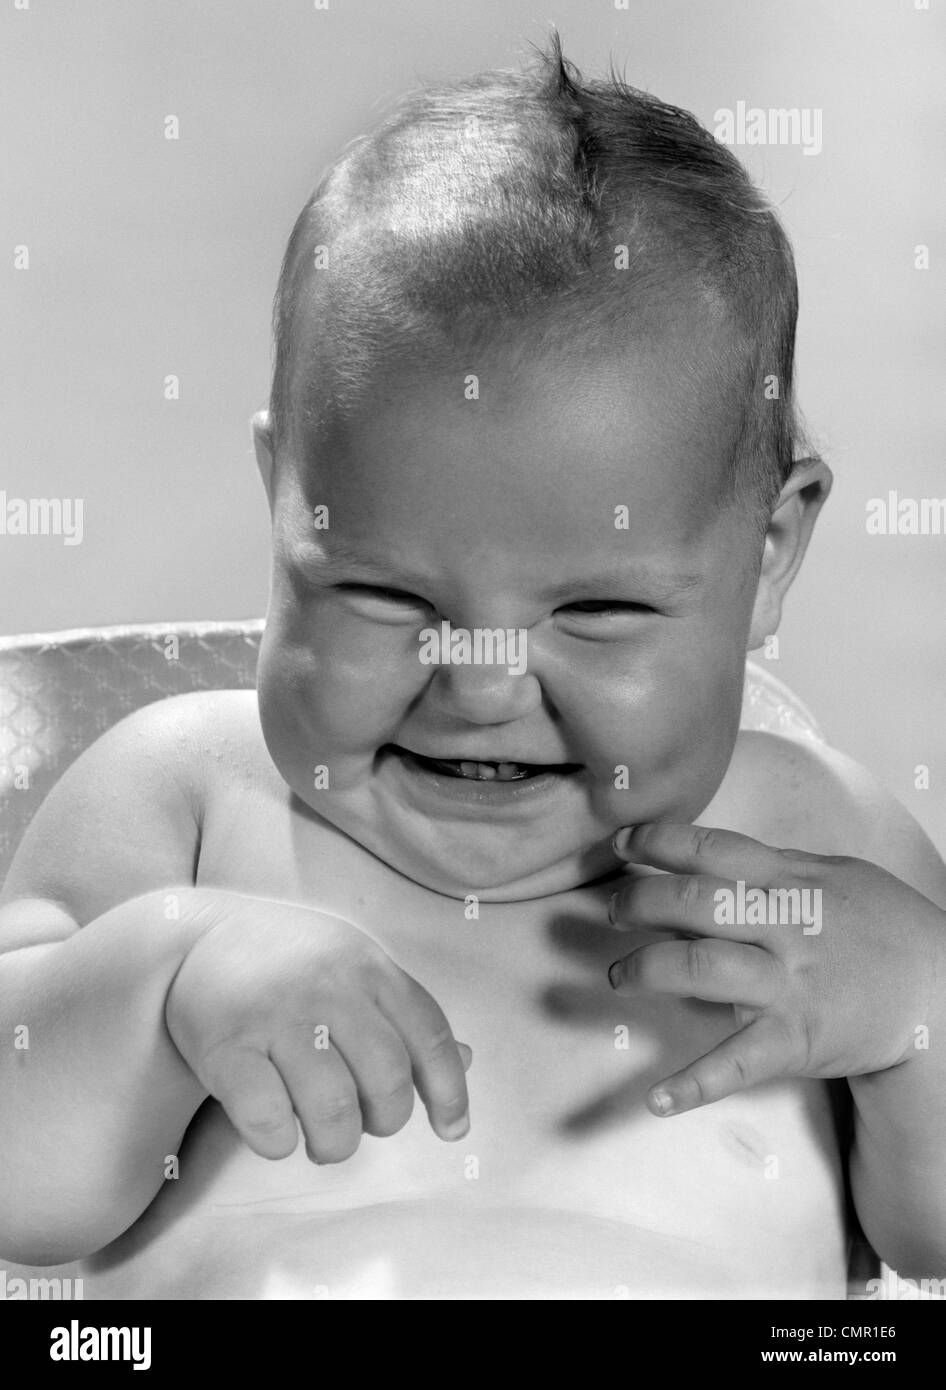 1960 PORTRAIT OF SMILING BABY PISCINE FAIRE UNE DRÔLE DE VISAGE Banque D'Images